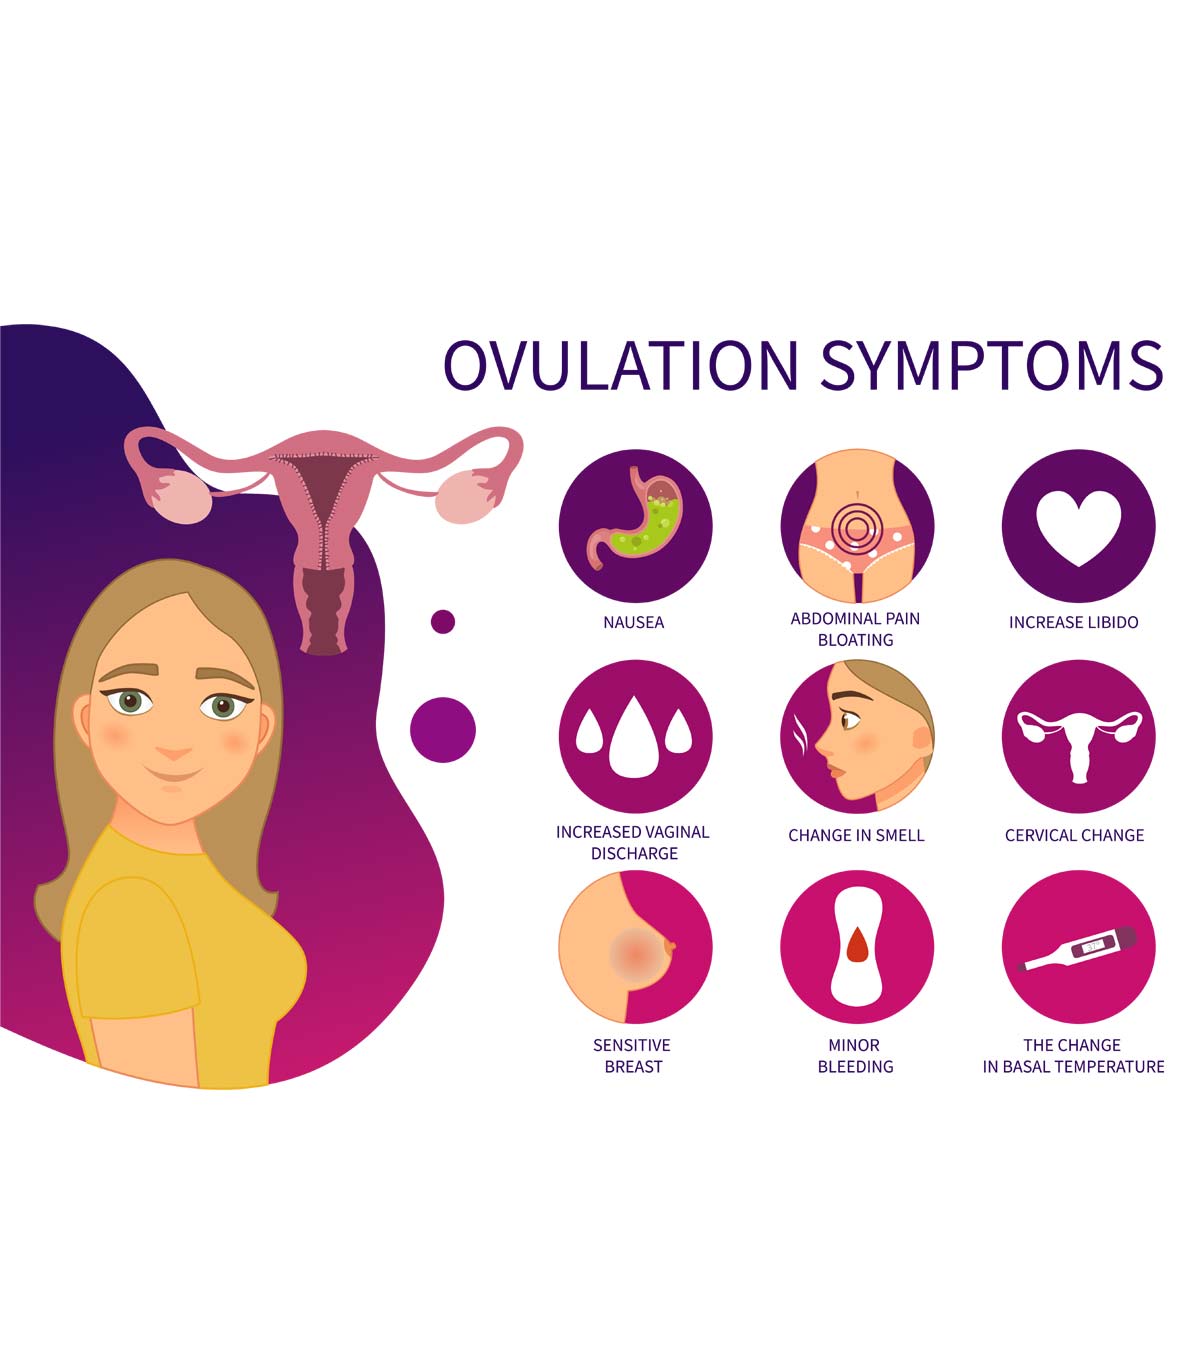 ओवुलेशन (डिंबोत्सर्जन) के 7 प्रमुख लक्षण व गर्भधारण |  Ovulation Signs And Symptoms In Hindi